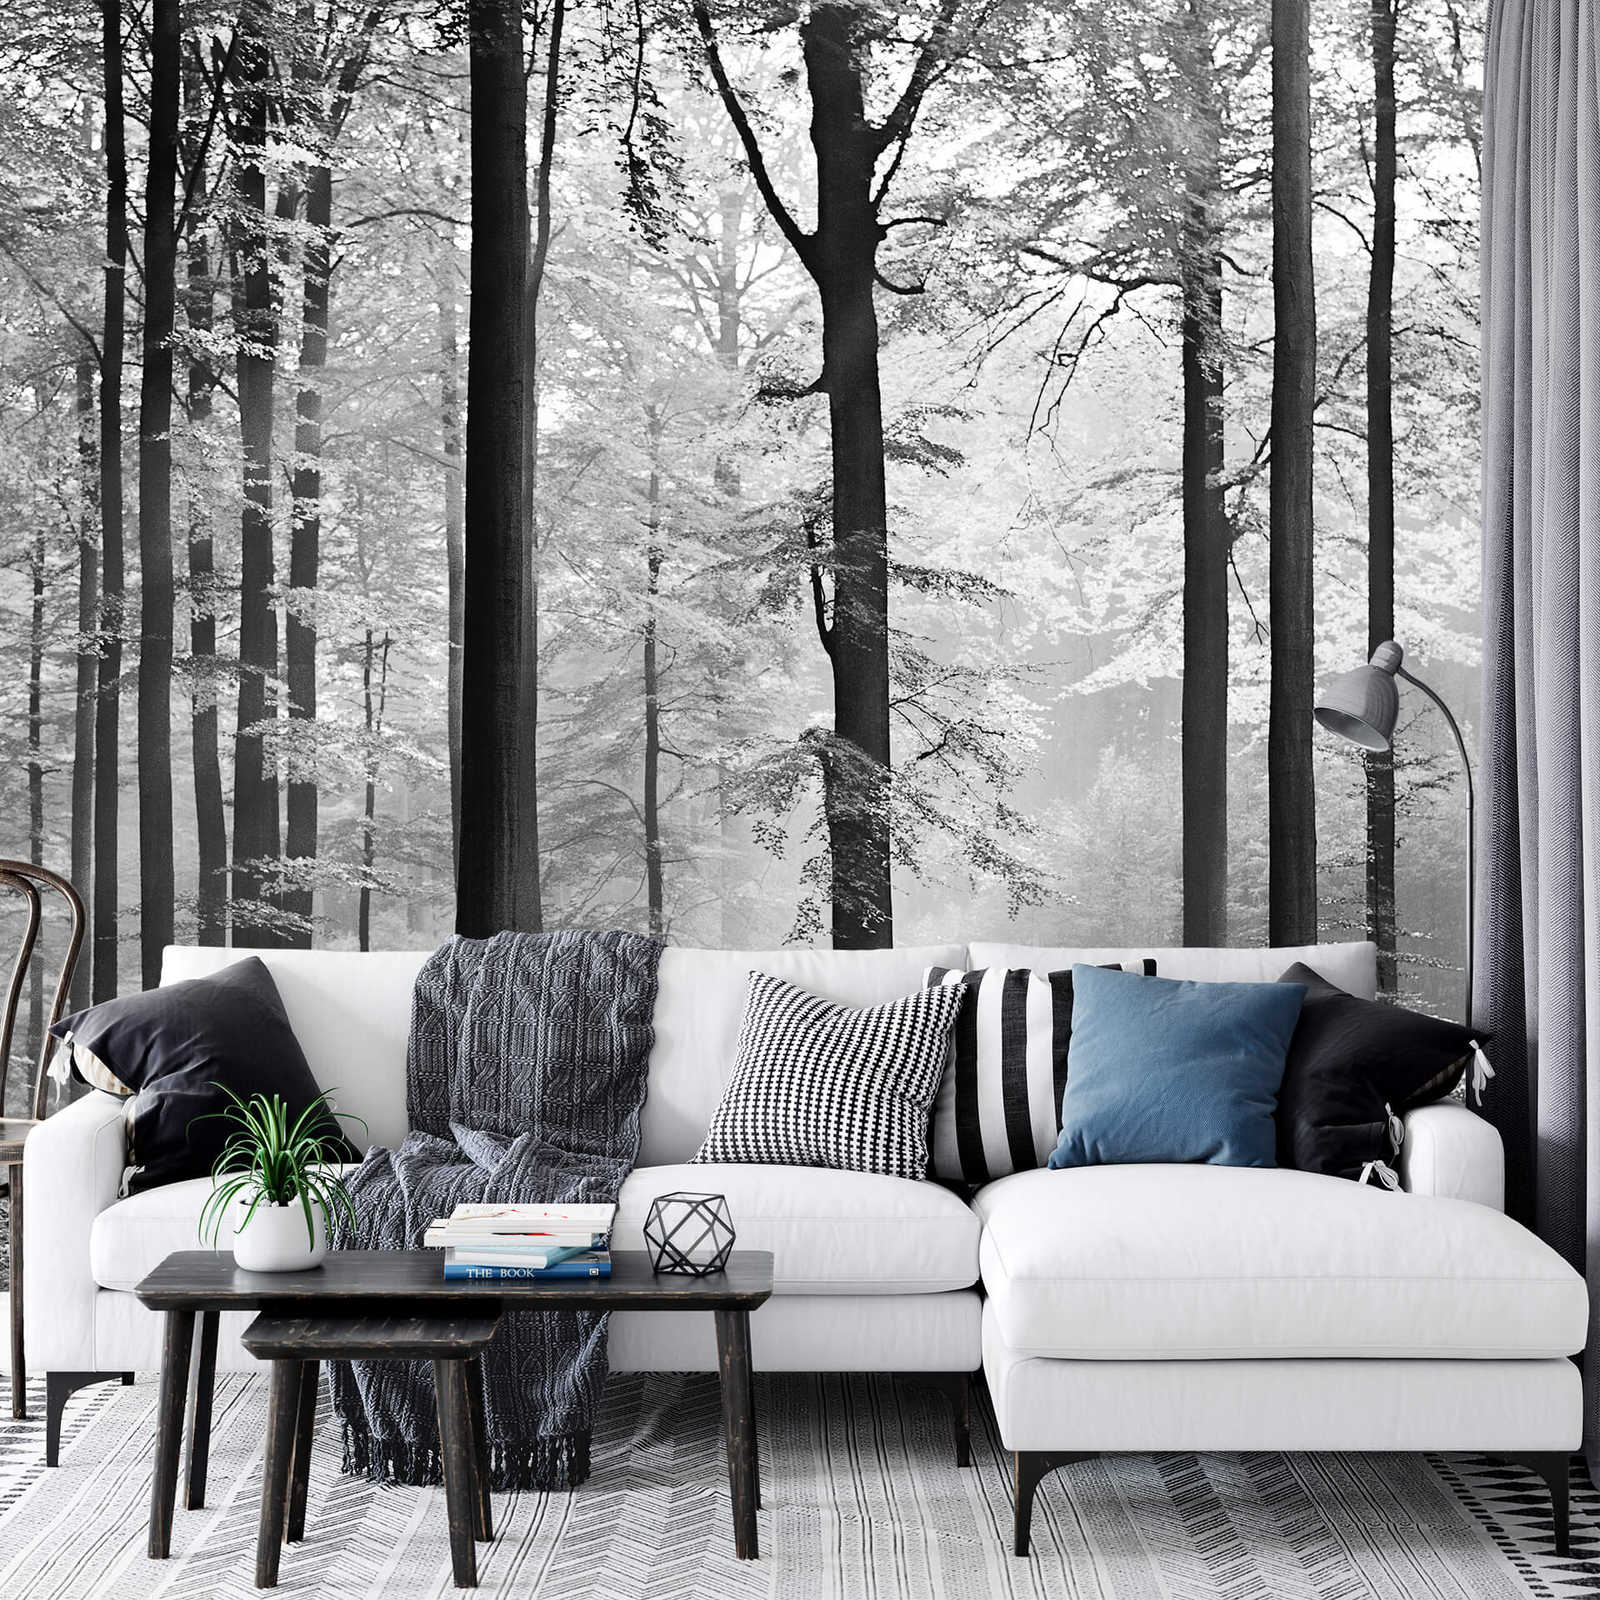             Blätterwald Fototapete Grau-Weiß – Schwarz, Weiß, Grau
        